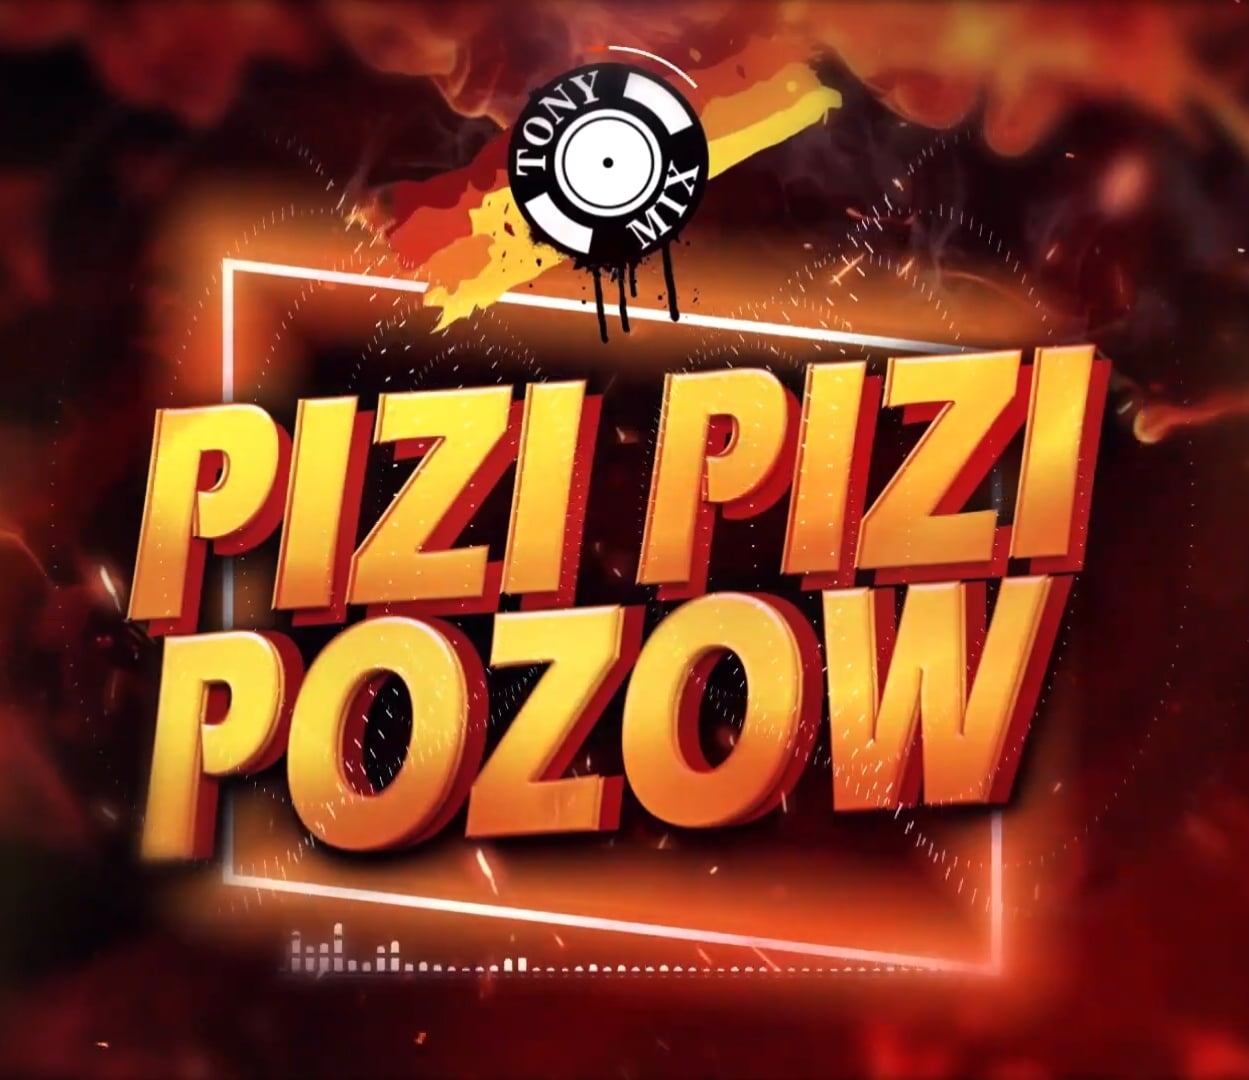 Tonymix pizi pizi pozow [ DOWNLOAD MP3 ]